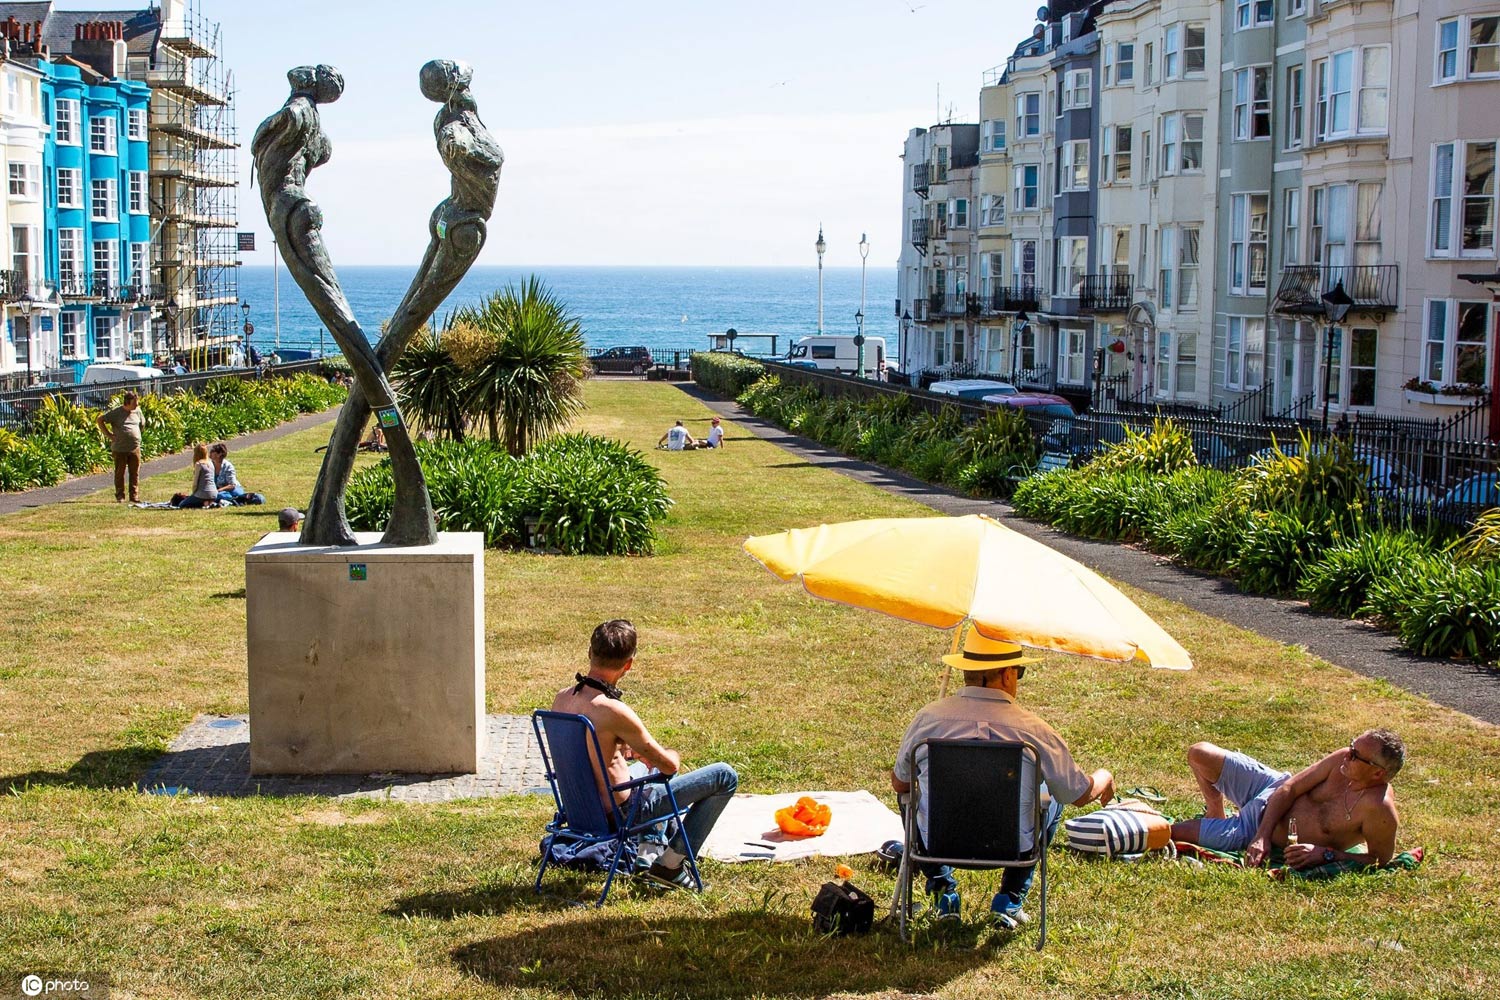 妇女晒日光浴作为石欧洲海滩的游人 库存图片. 图片 包括有 海岛, 海洋, 位于, 节假日, 人们, 享用 - 154118137